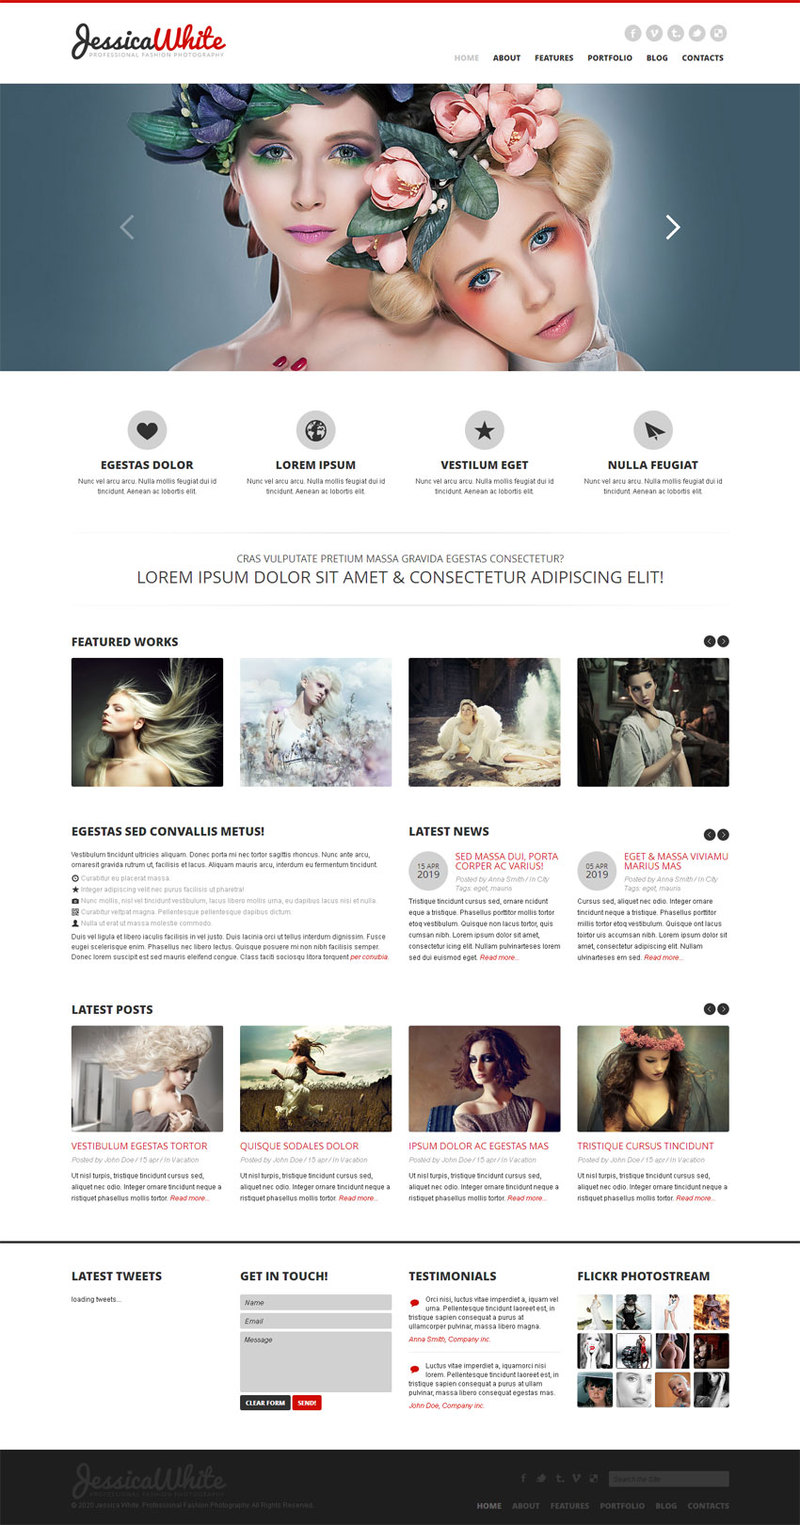 欧美风格婚纱摄影网站模板整站模板下载